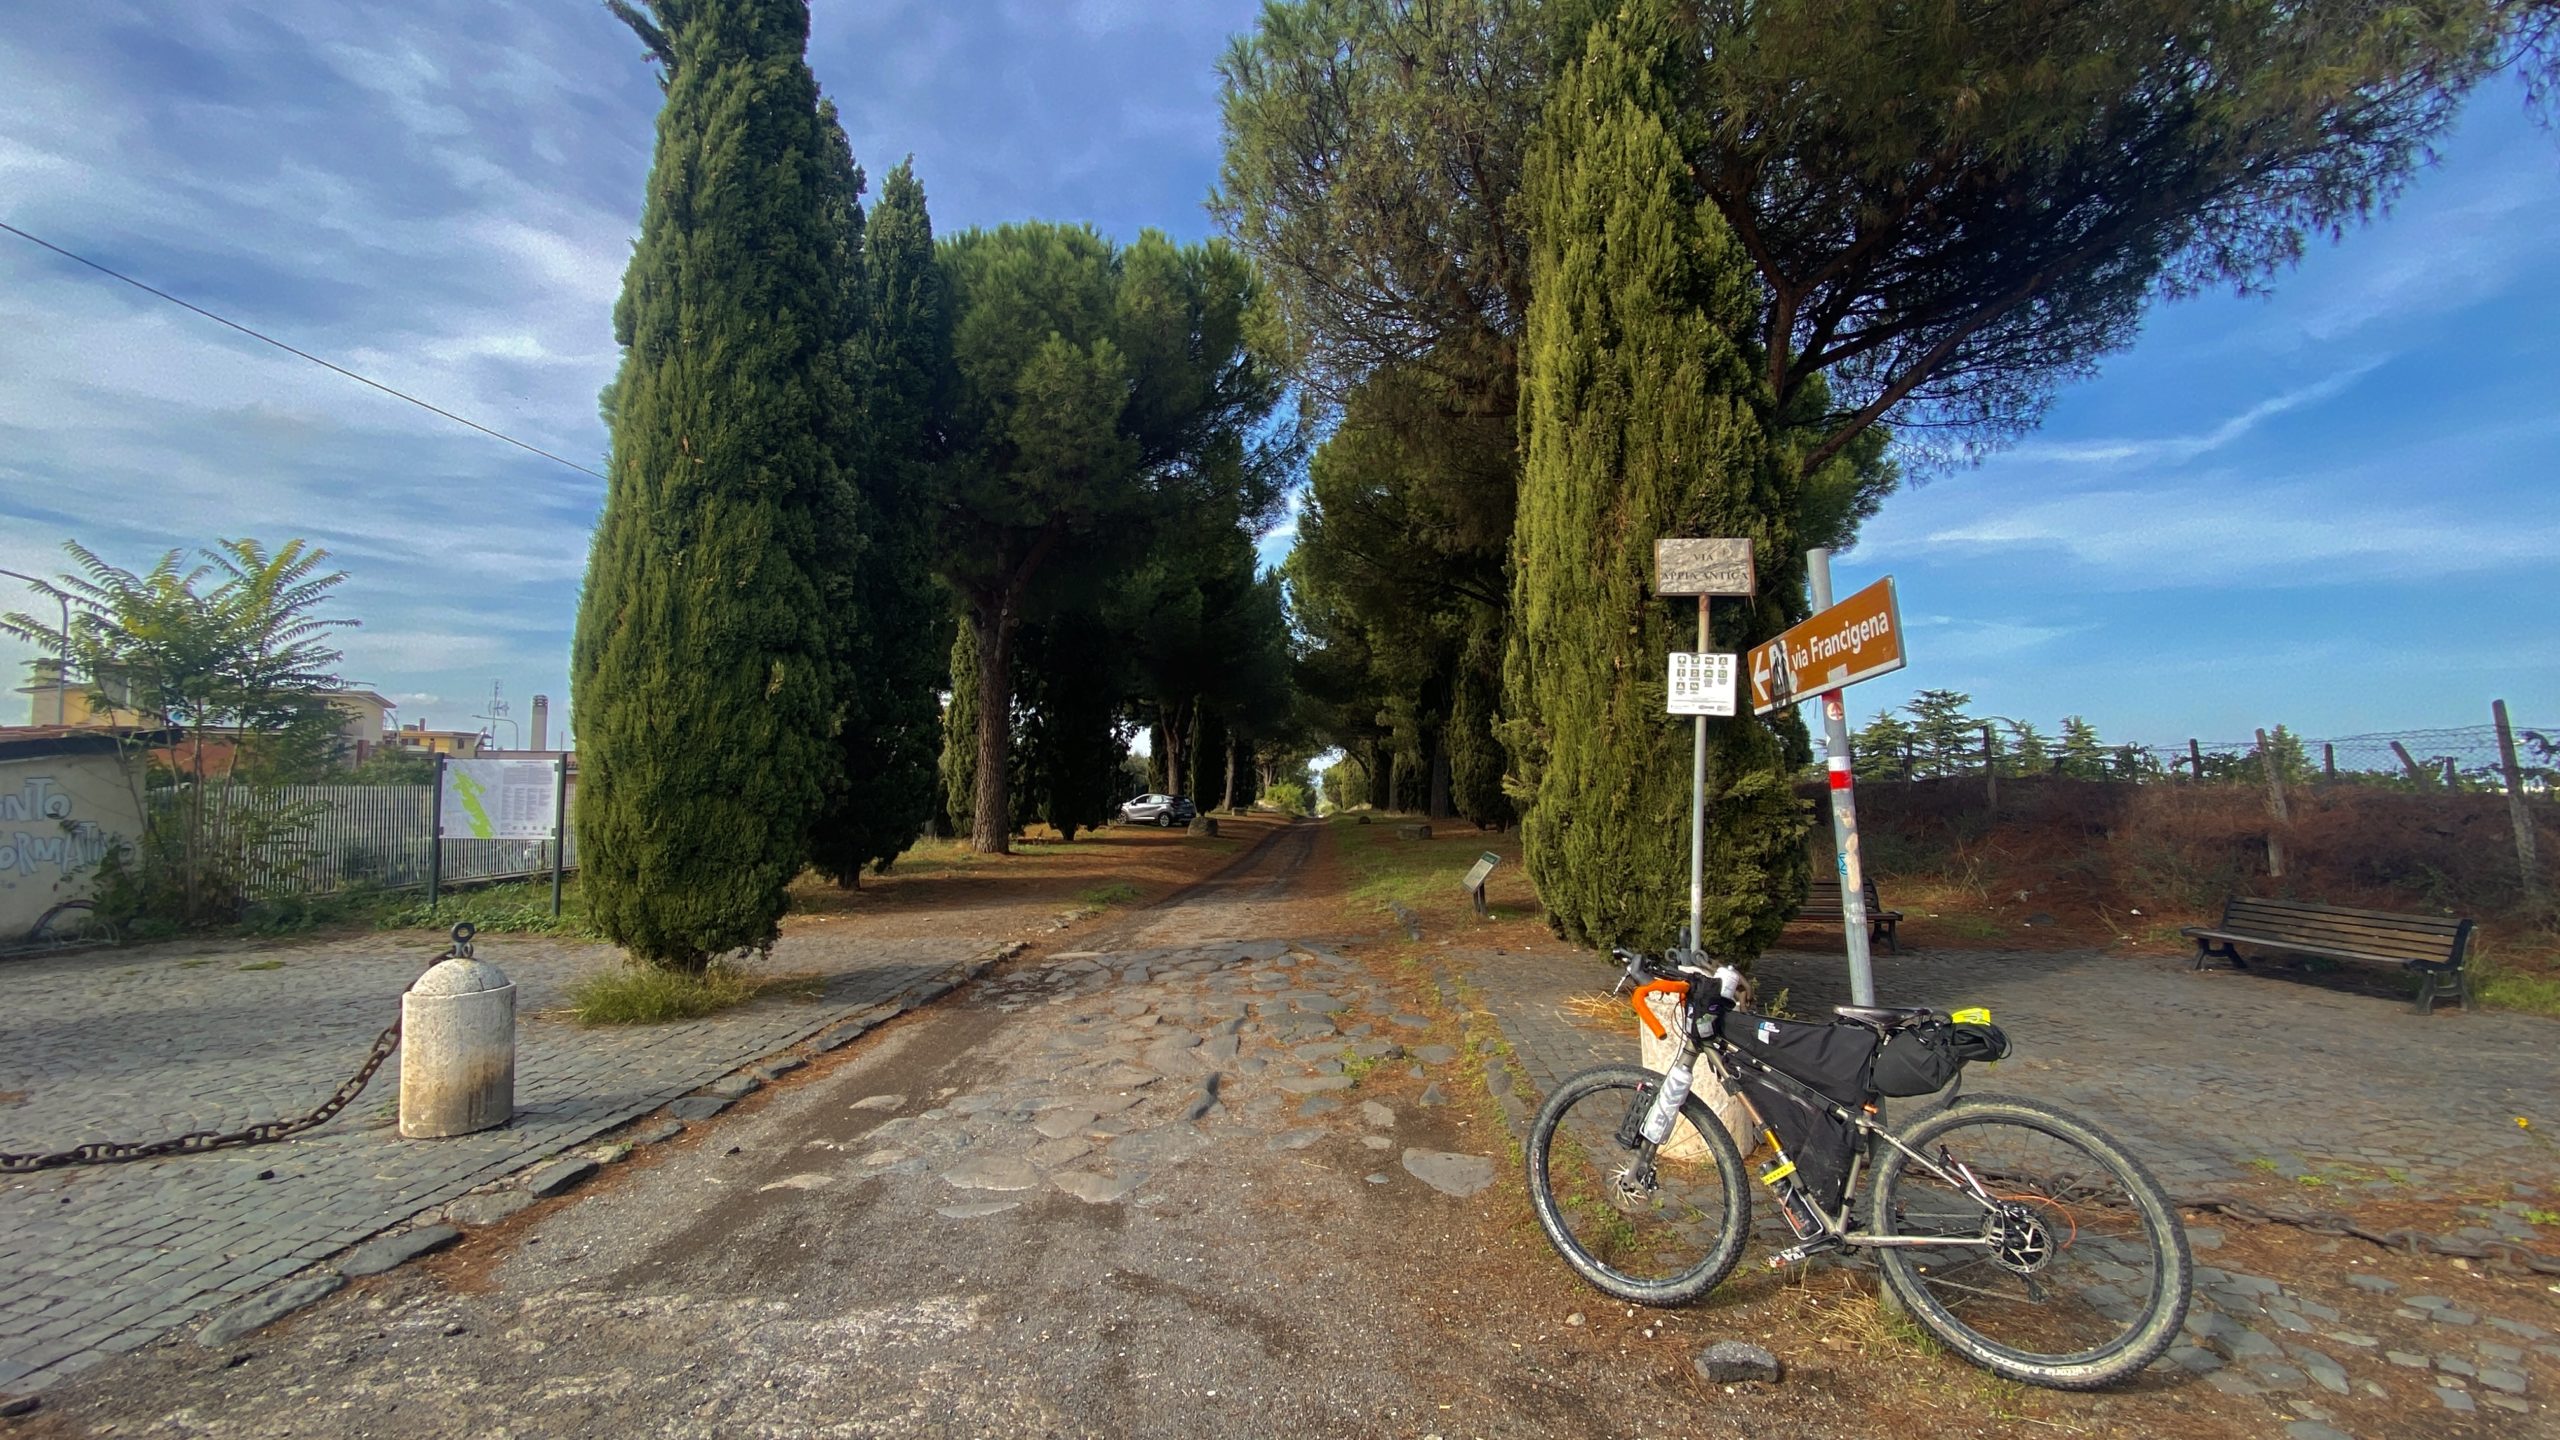 cicloturismo in italia, cicloviaggio in Italia, cicloviaggi, viaggiatore lento, viaggiare in bici, Roma in bici, viaggiare in bicicletta, viaggi in bici italia